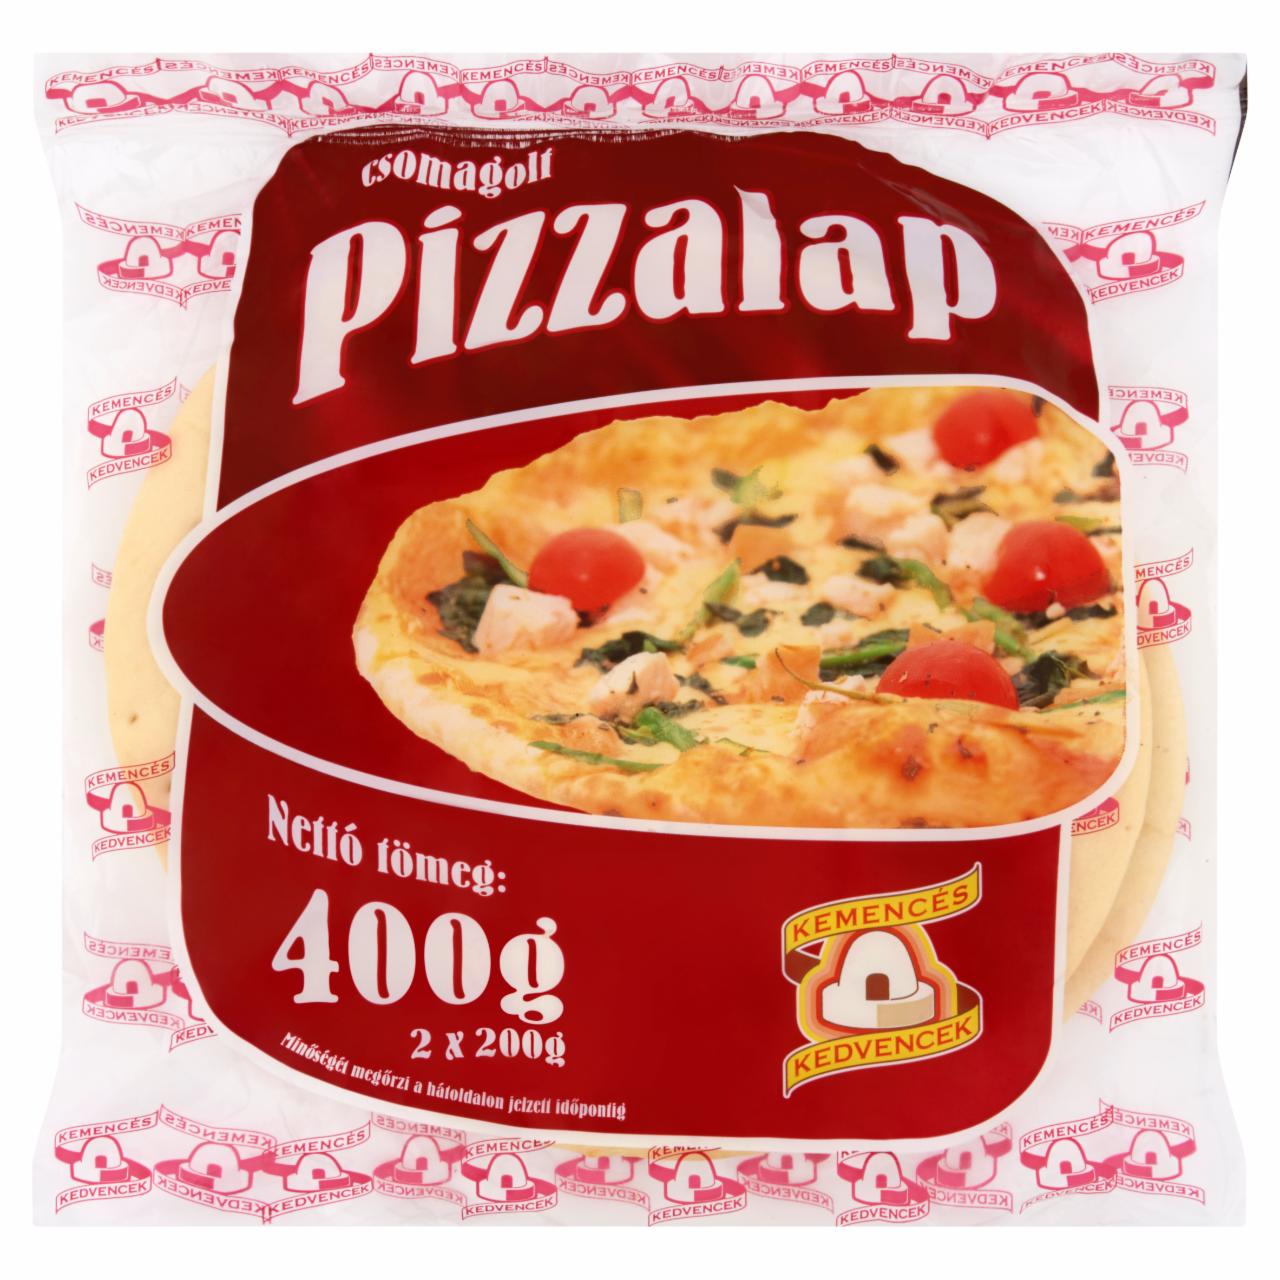 Képek - Kemencés Kedvencek pizzalap 2 db 400 g